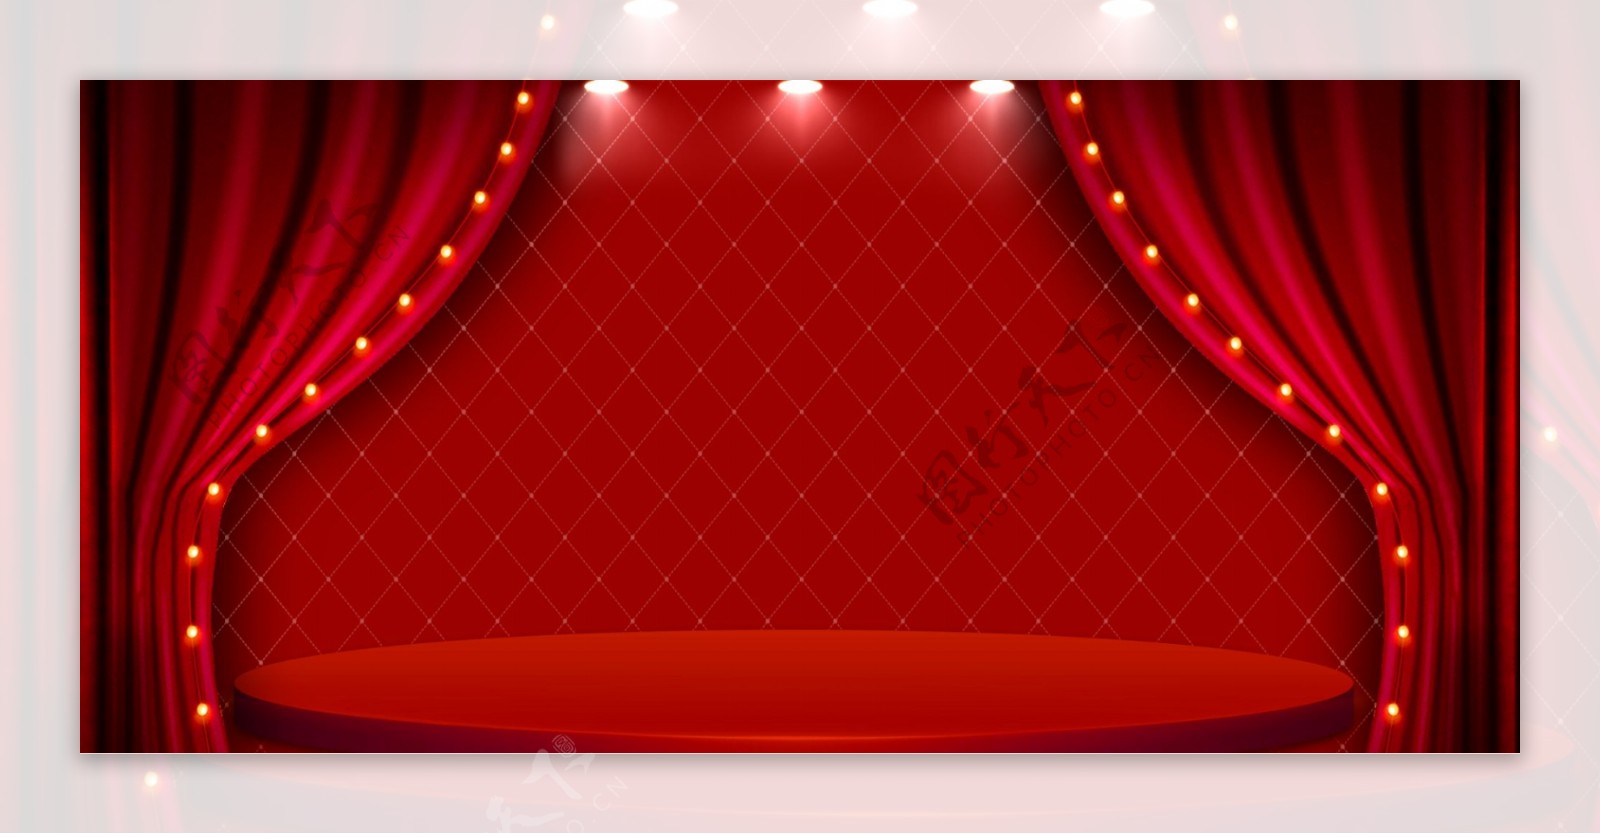 红色舞台背景素材